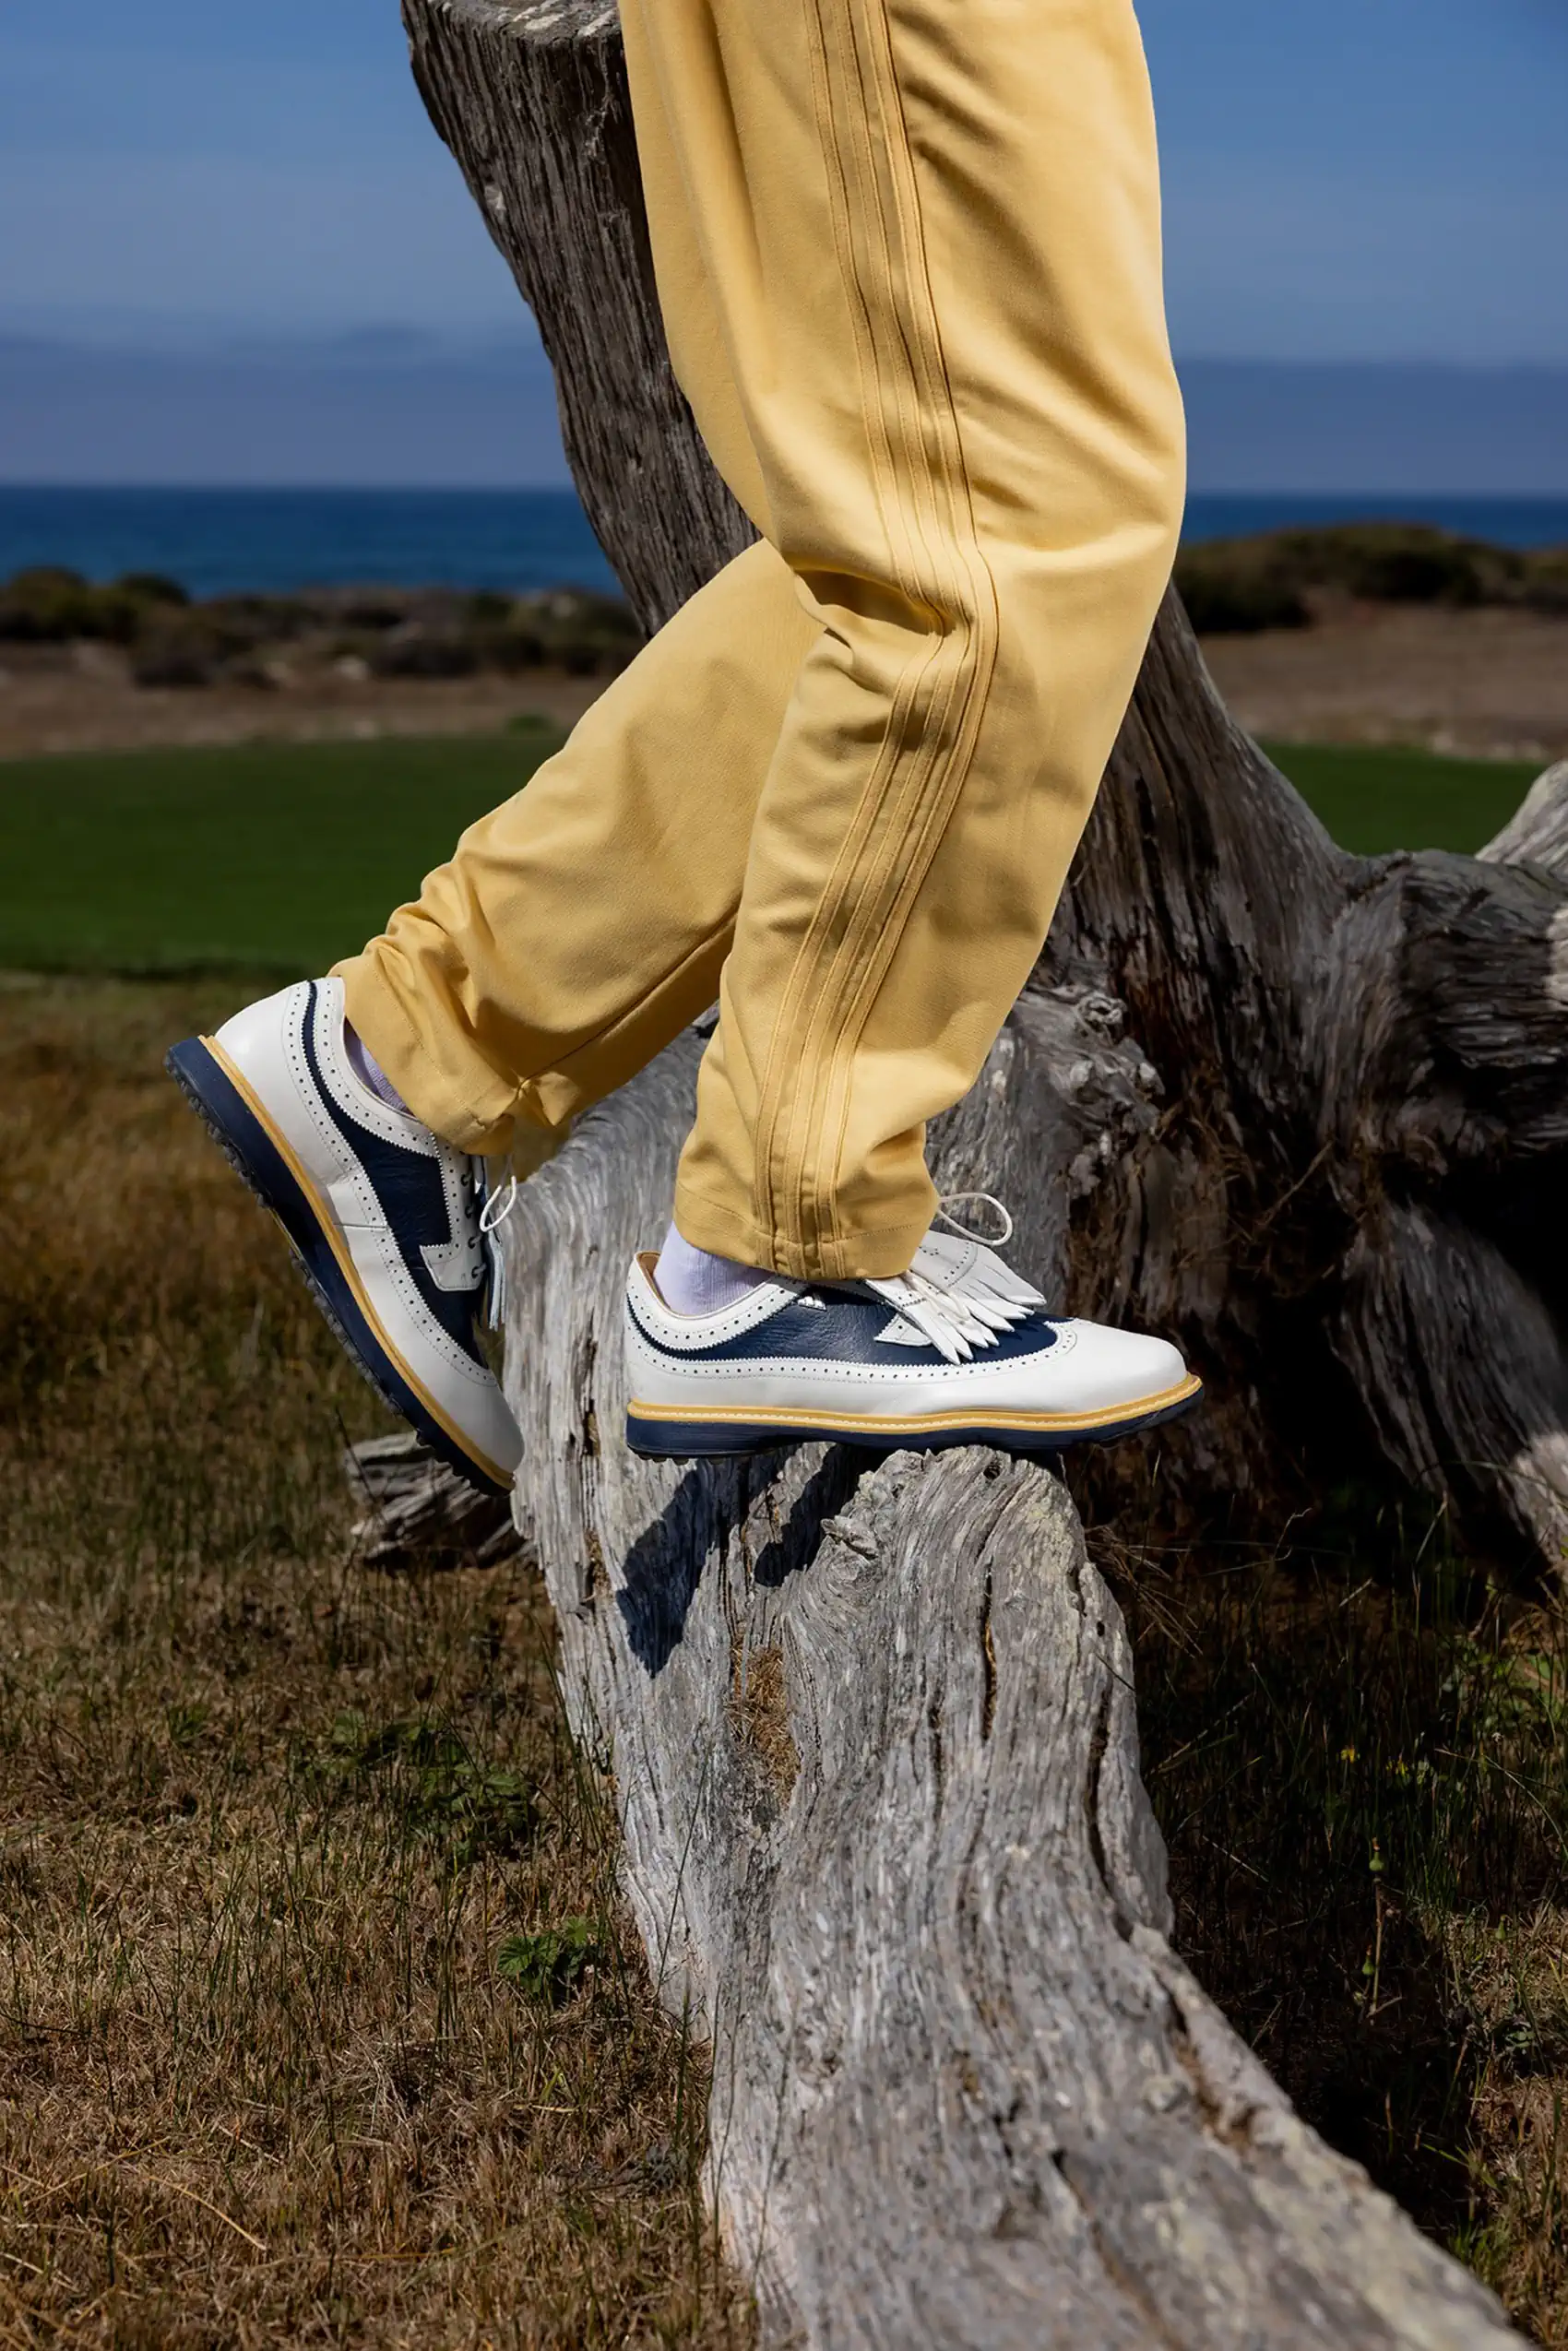 adidas et Malbon Golf lancent "The Crosby Collection" en hommage à l'héritage de Bing Crosby